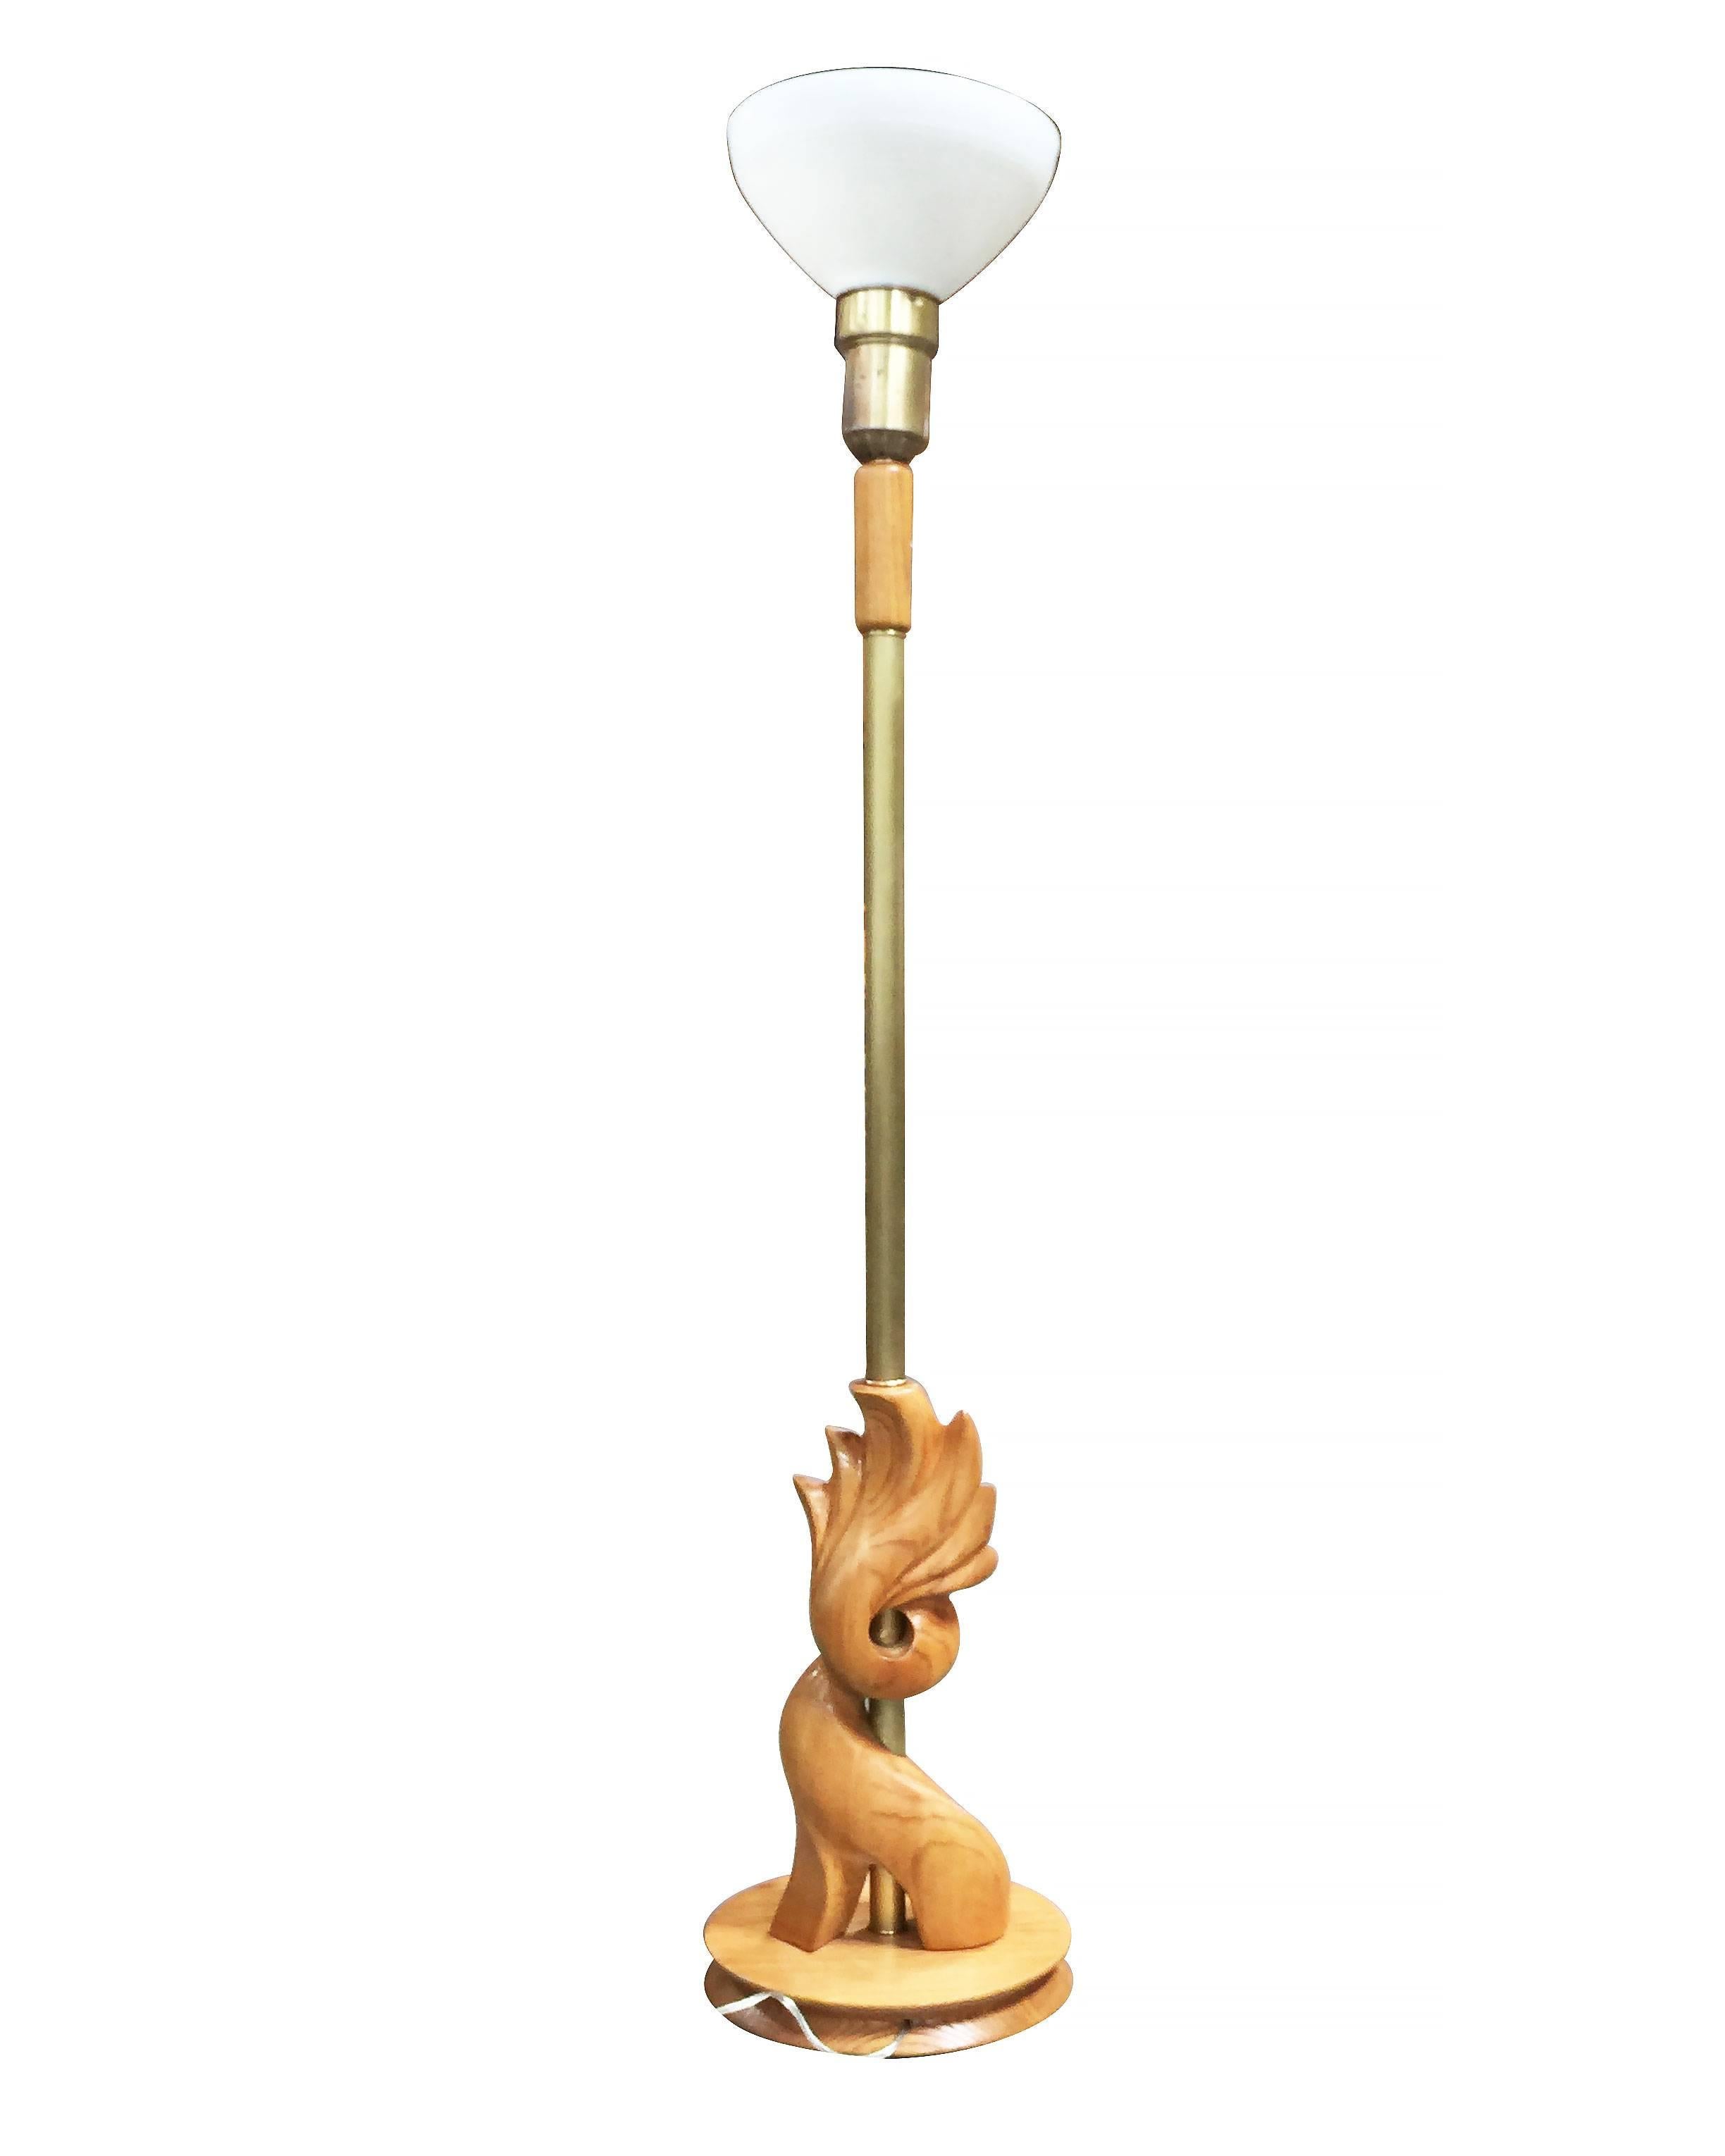 Paire de lampadaires torchères en bois sculpté à la main de style Heifetz, avec abat-jour en verre laiteux et accents en laiton.